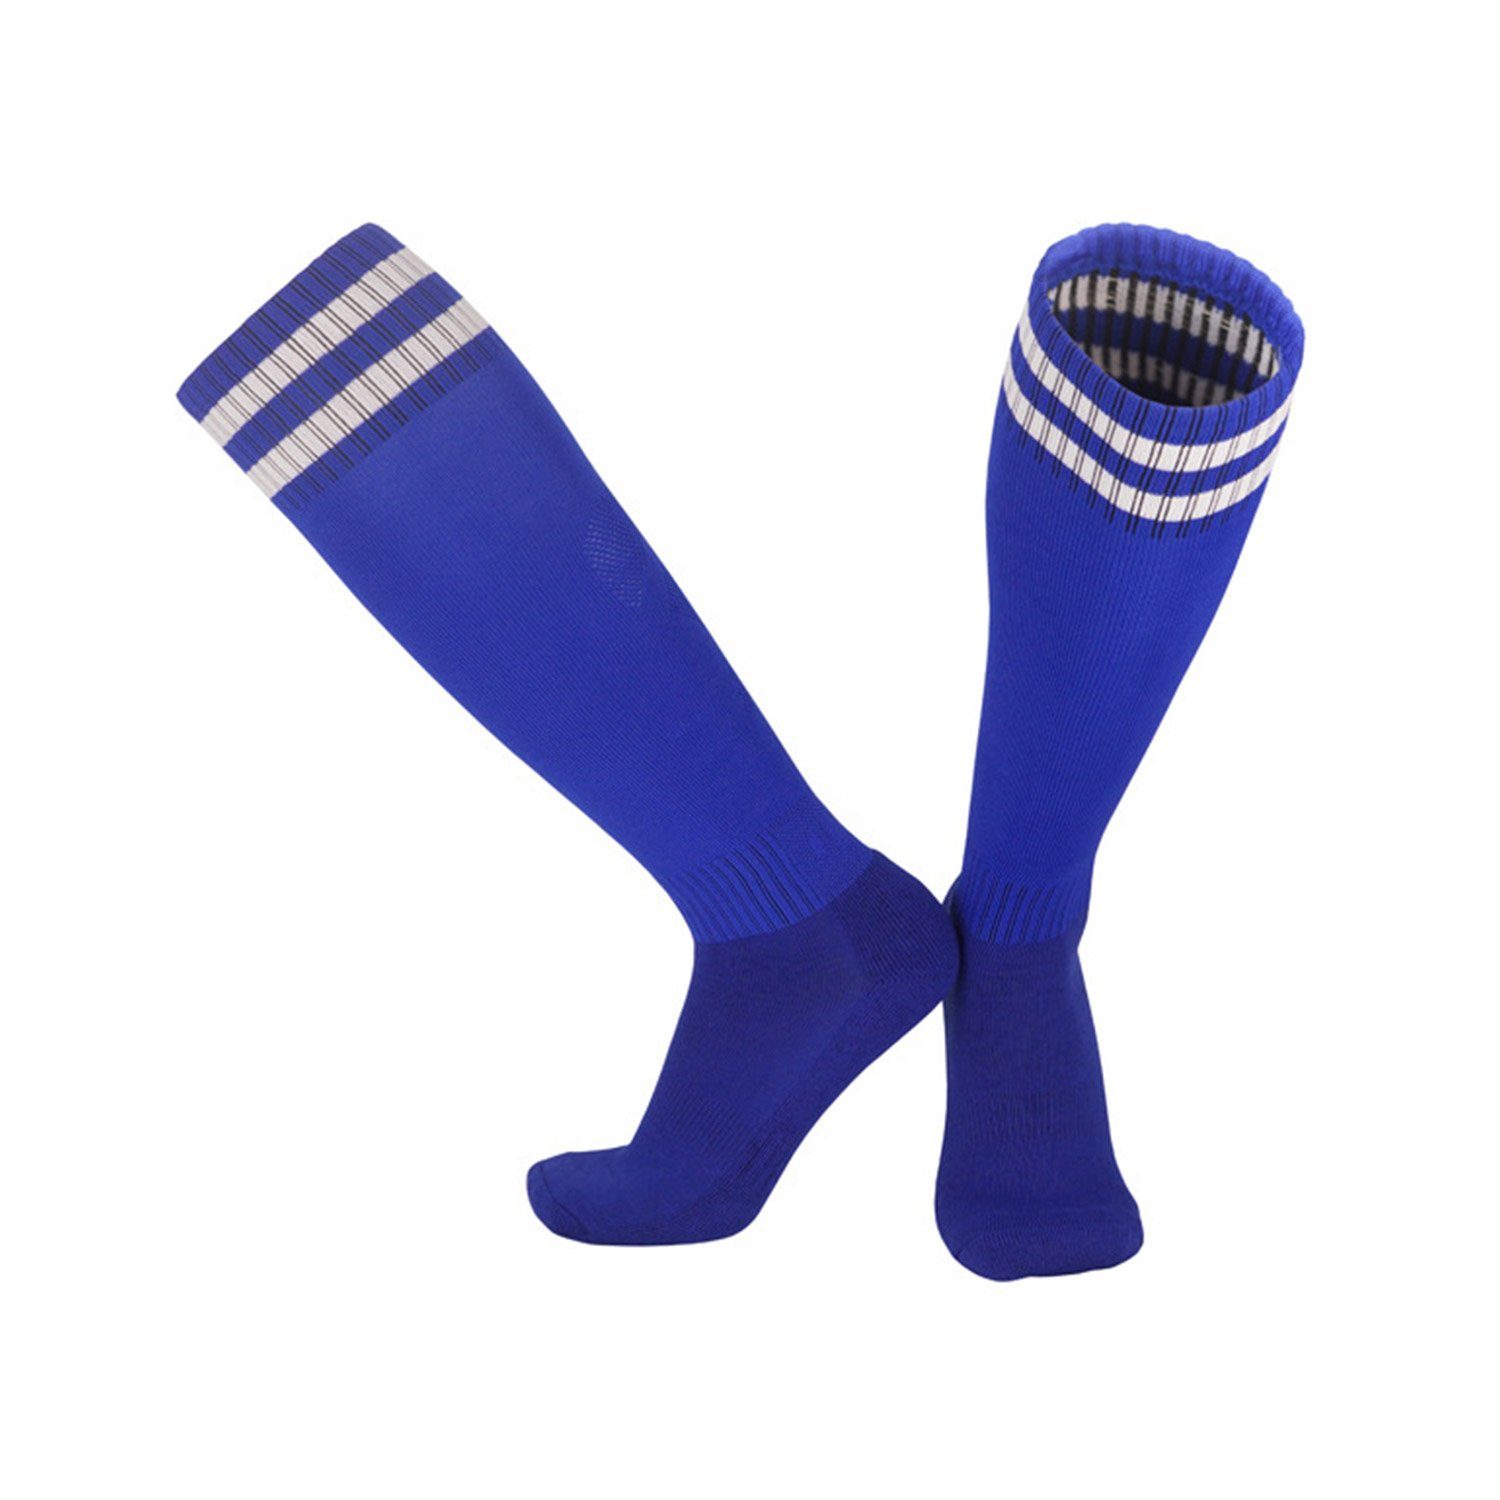 MAGICSHE Sportsocken Kinderfußball -Socken für Erwachsene Fadenfäden Socken Neutral Training Socken Fußballtraining, Laufen und Bewegung Blau